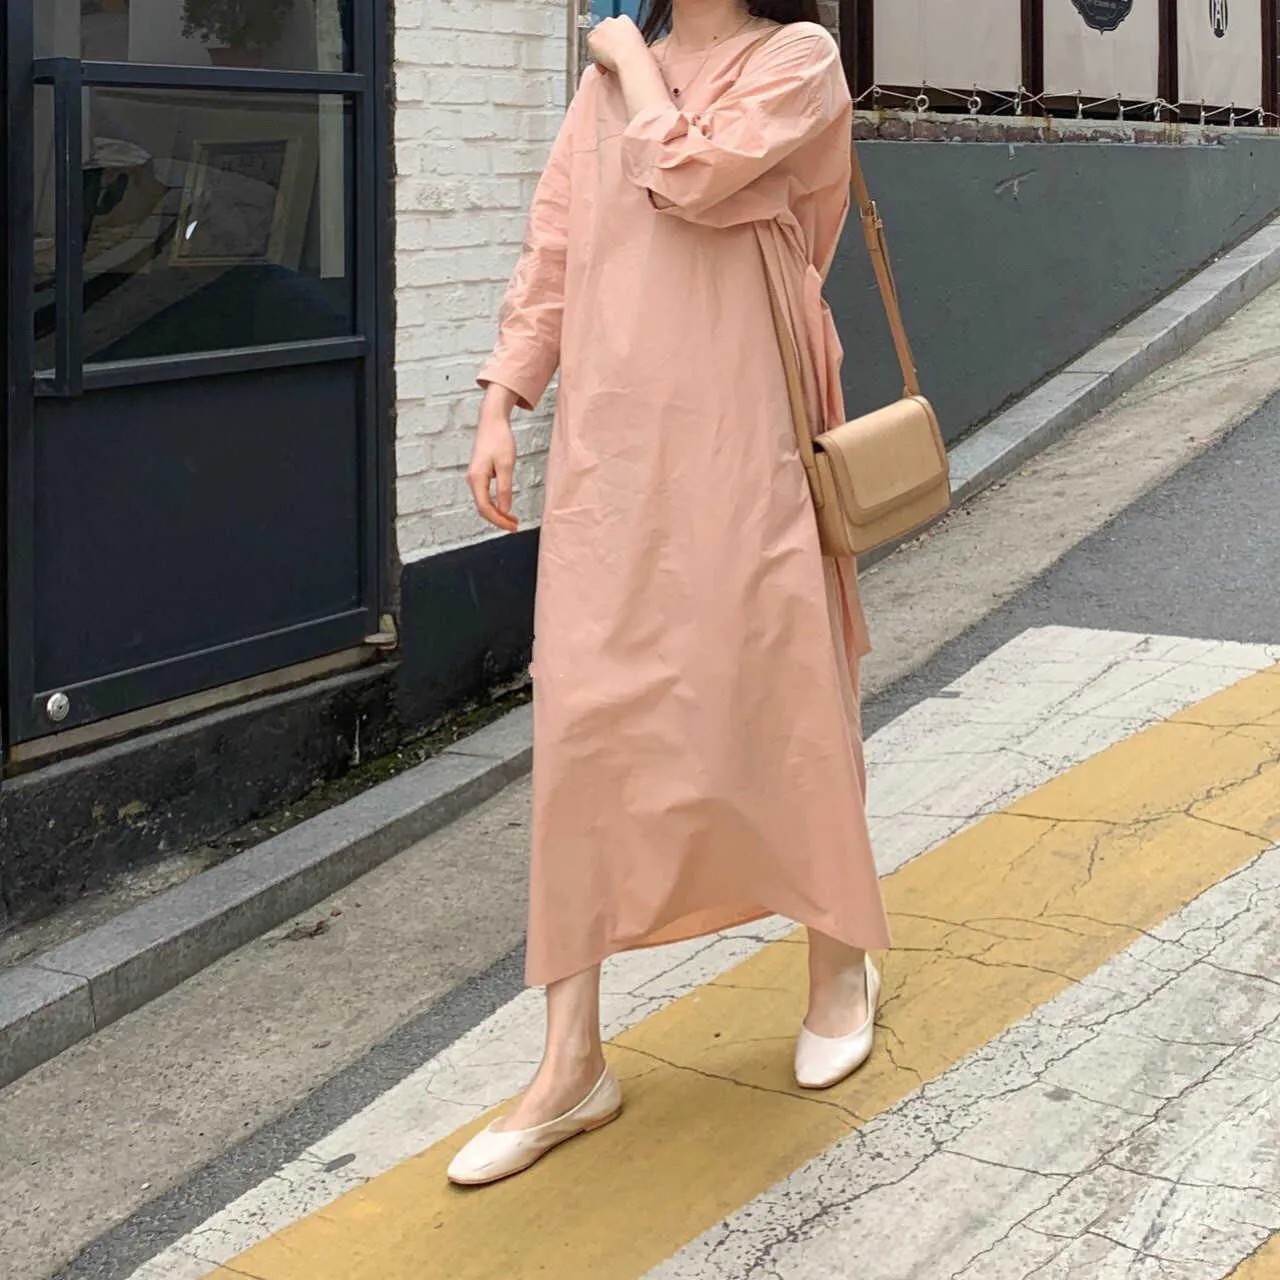 Kleider Frauen Chic Koreanische Sanfte Lose Rosa O Neck Puff Langarm Taille Bandage Shirts Kleid Maxi Vestido De Mujer mode 210610